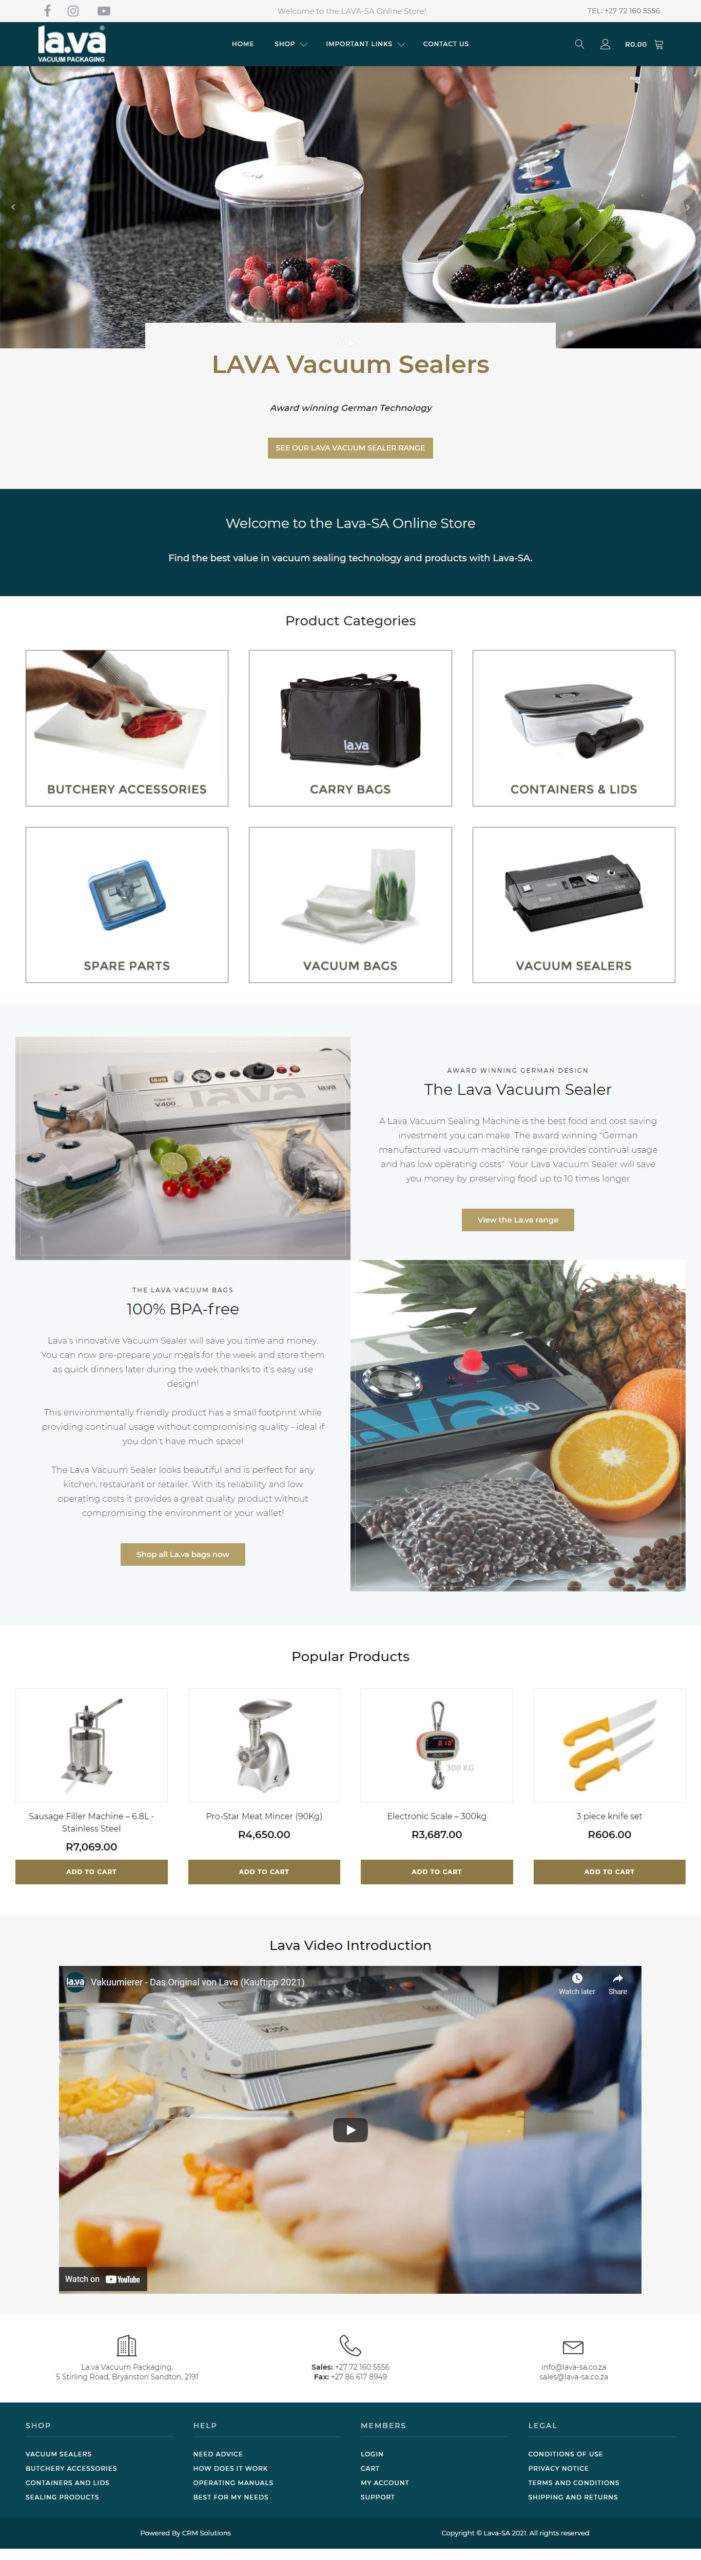 LAVA-SA E-Commerce Site